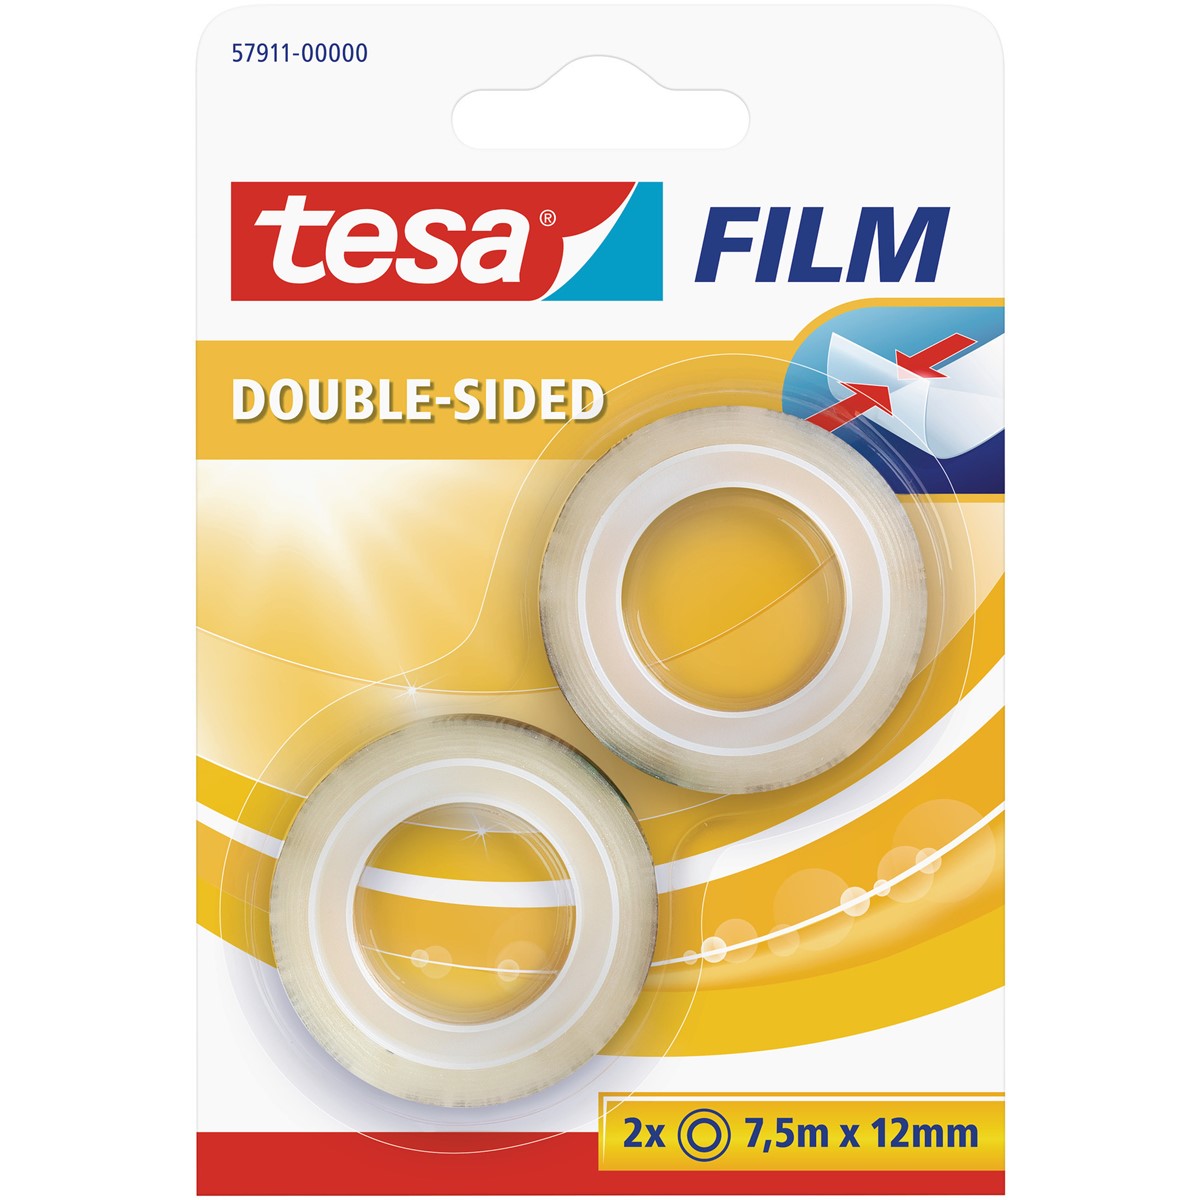 tesa 57911-00000 - tesafilm doppelseitig klebend, 7,5 m x 12 mm, 2er Pack